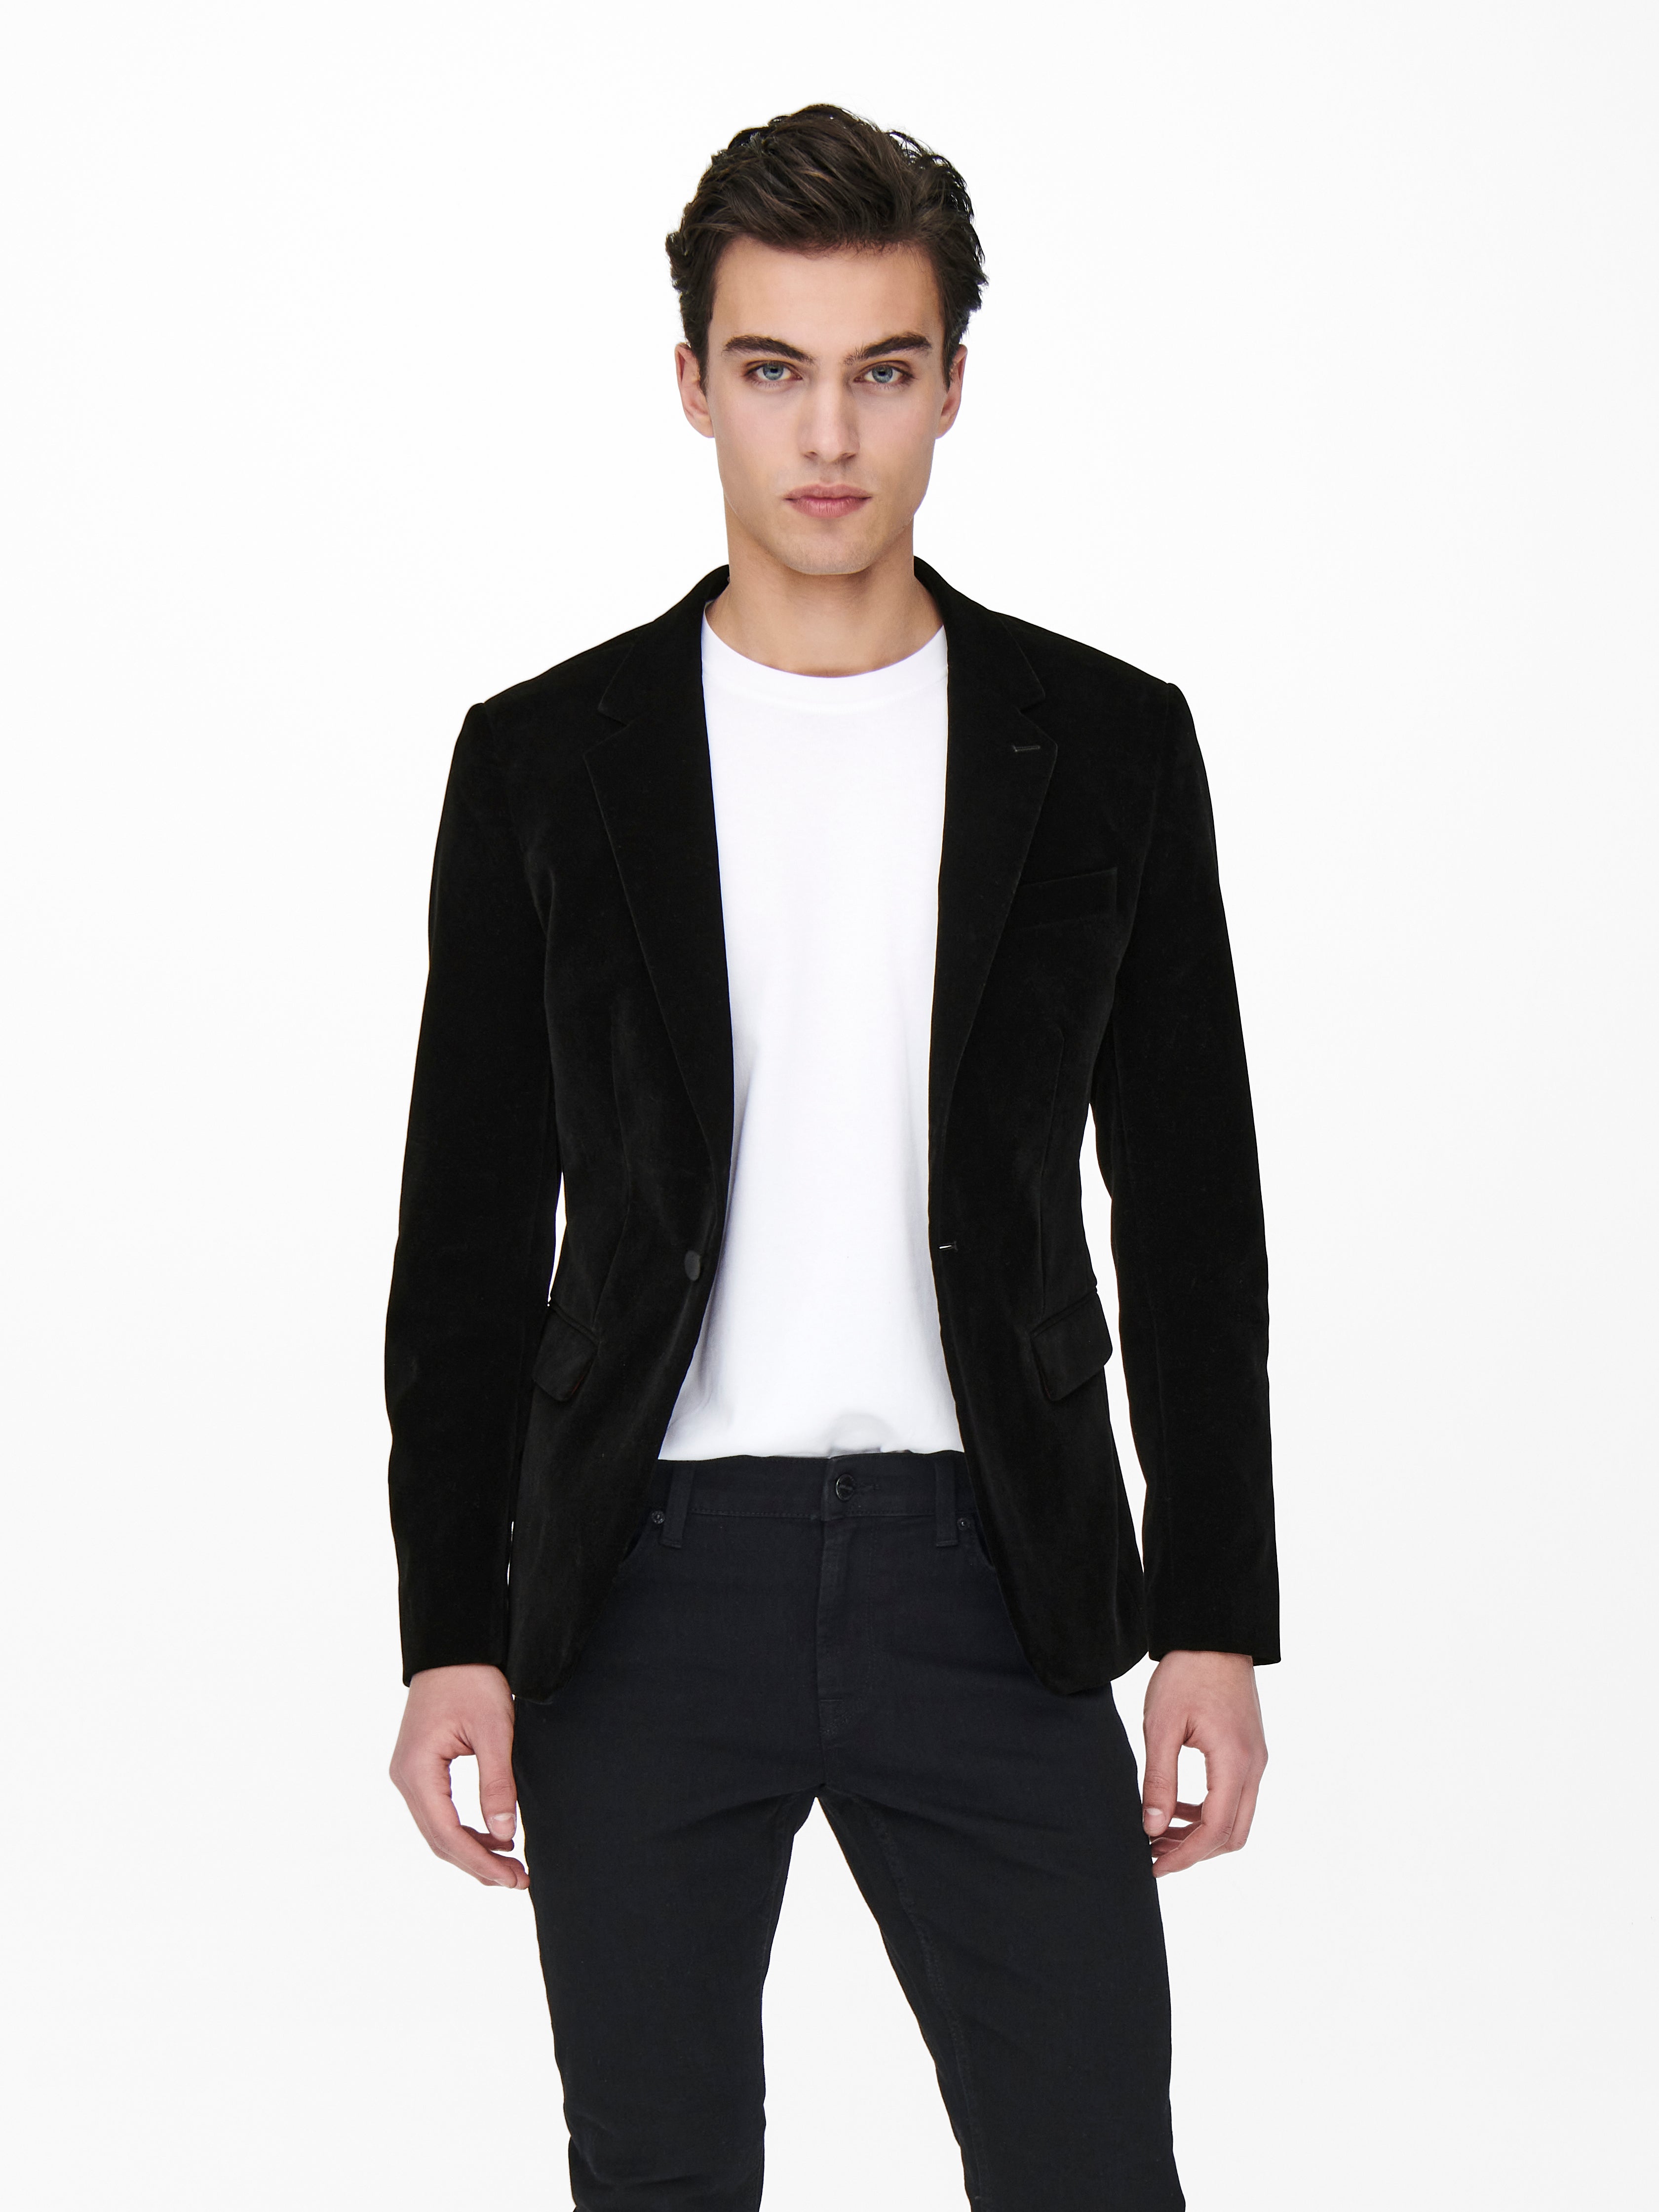 Garçons Premium bordeaux velours jacket kids formelle porter Bow Tie Blazer 